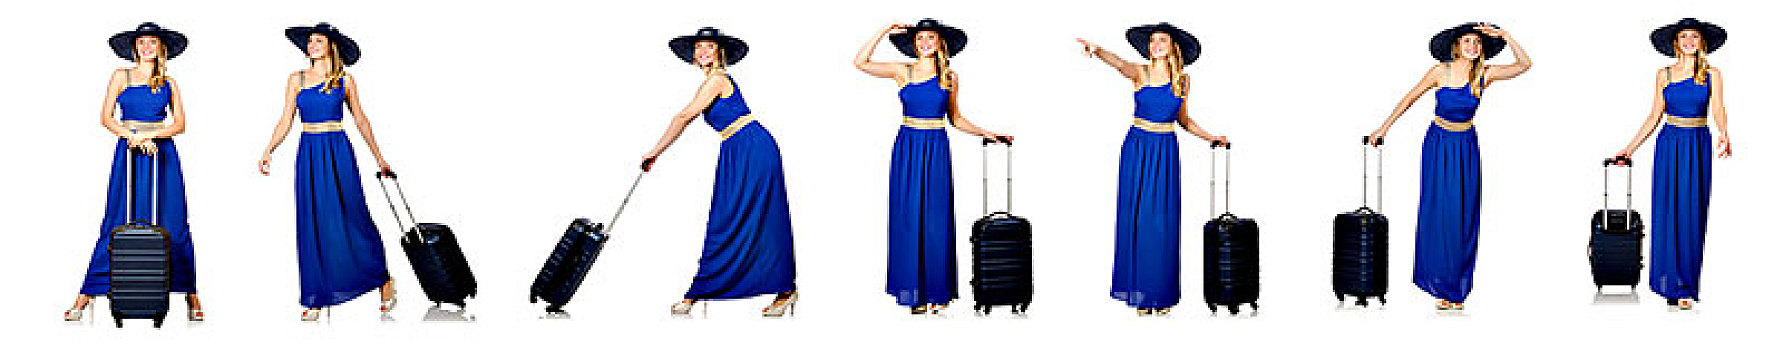 美女,蓝色,衣服,手提箱,隔绝,白色背景